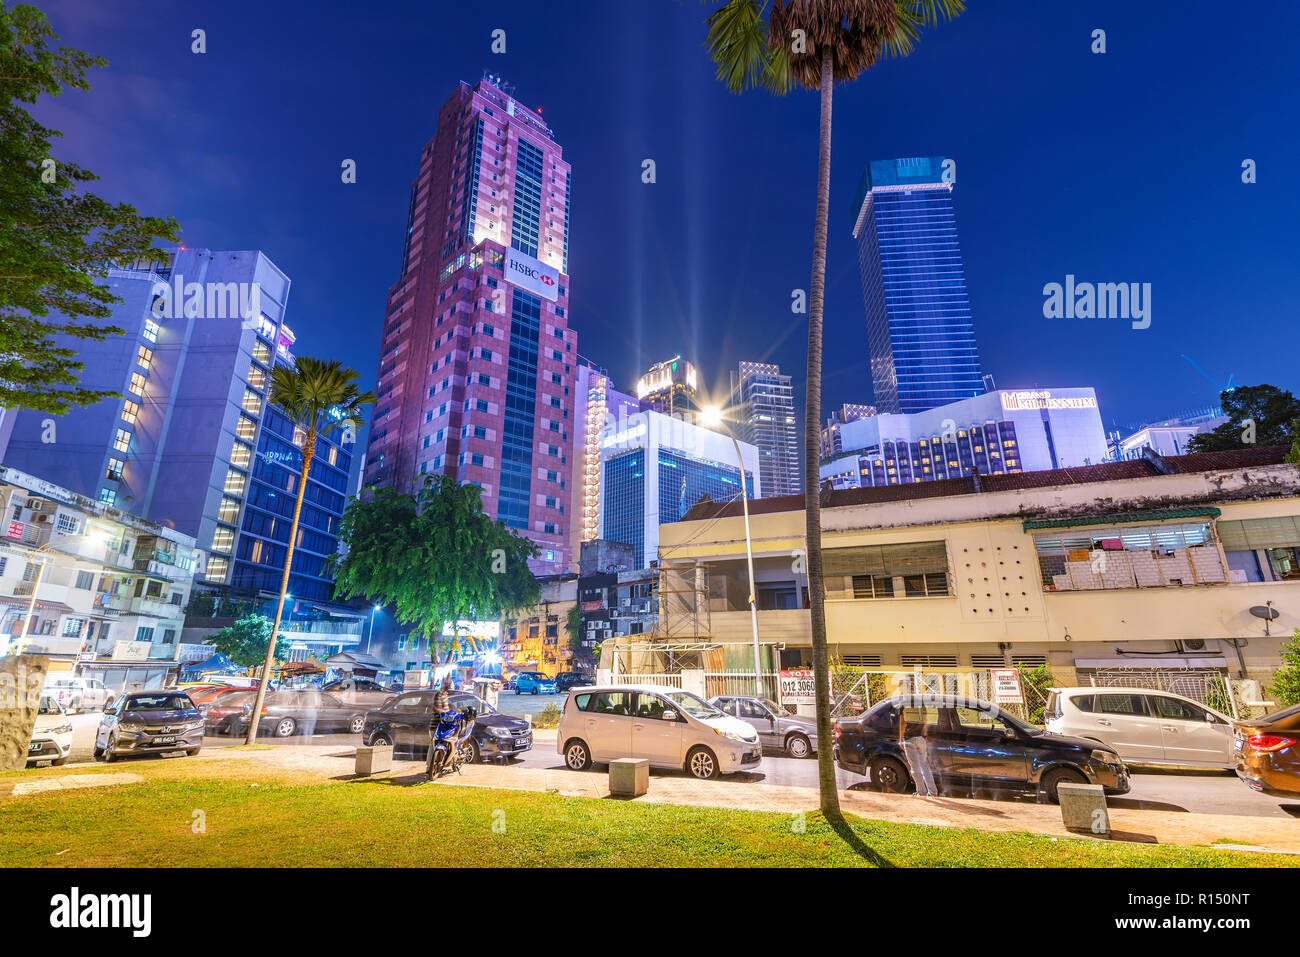 KUALA LUMPUR, Malesia - 23 Luglio: vista notturna di grattacieli moderni edifici nell'area del centro cittadino nei pressi di Bukit Bintang sulla luglio 23, 2018 a Kuala Lumpur Foto Stock